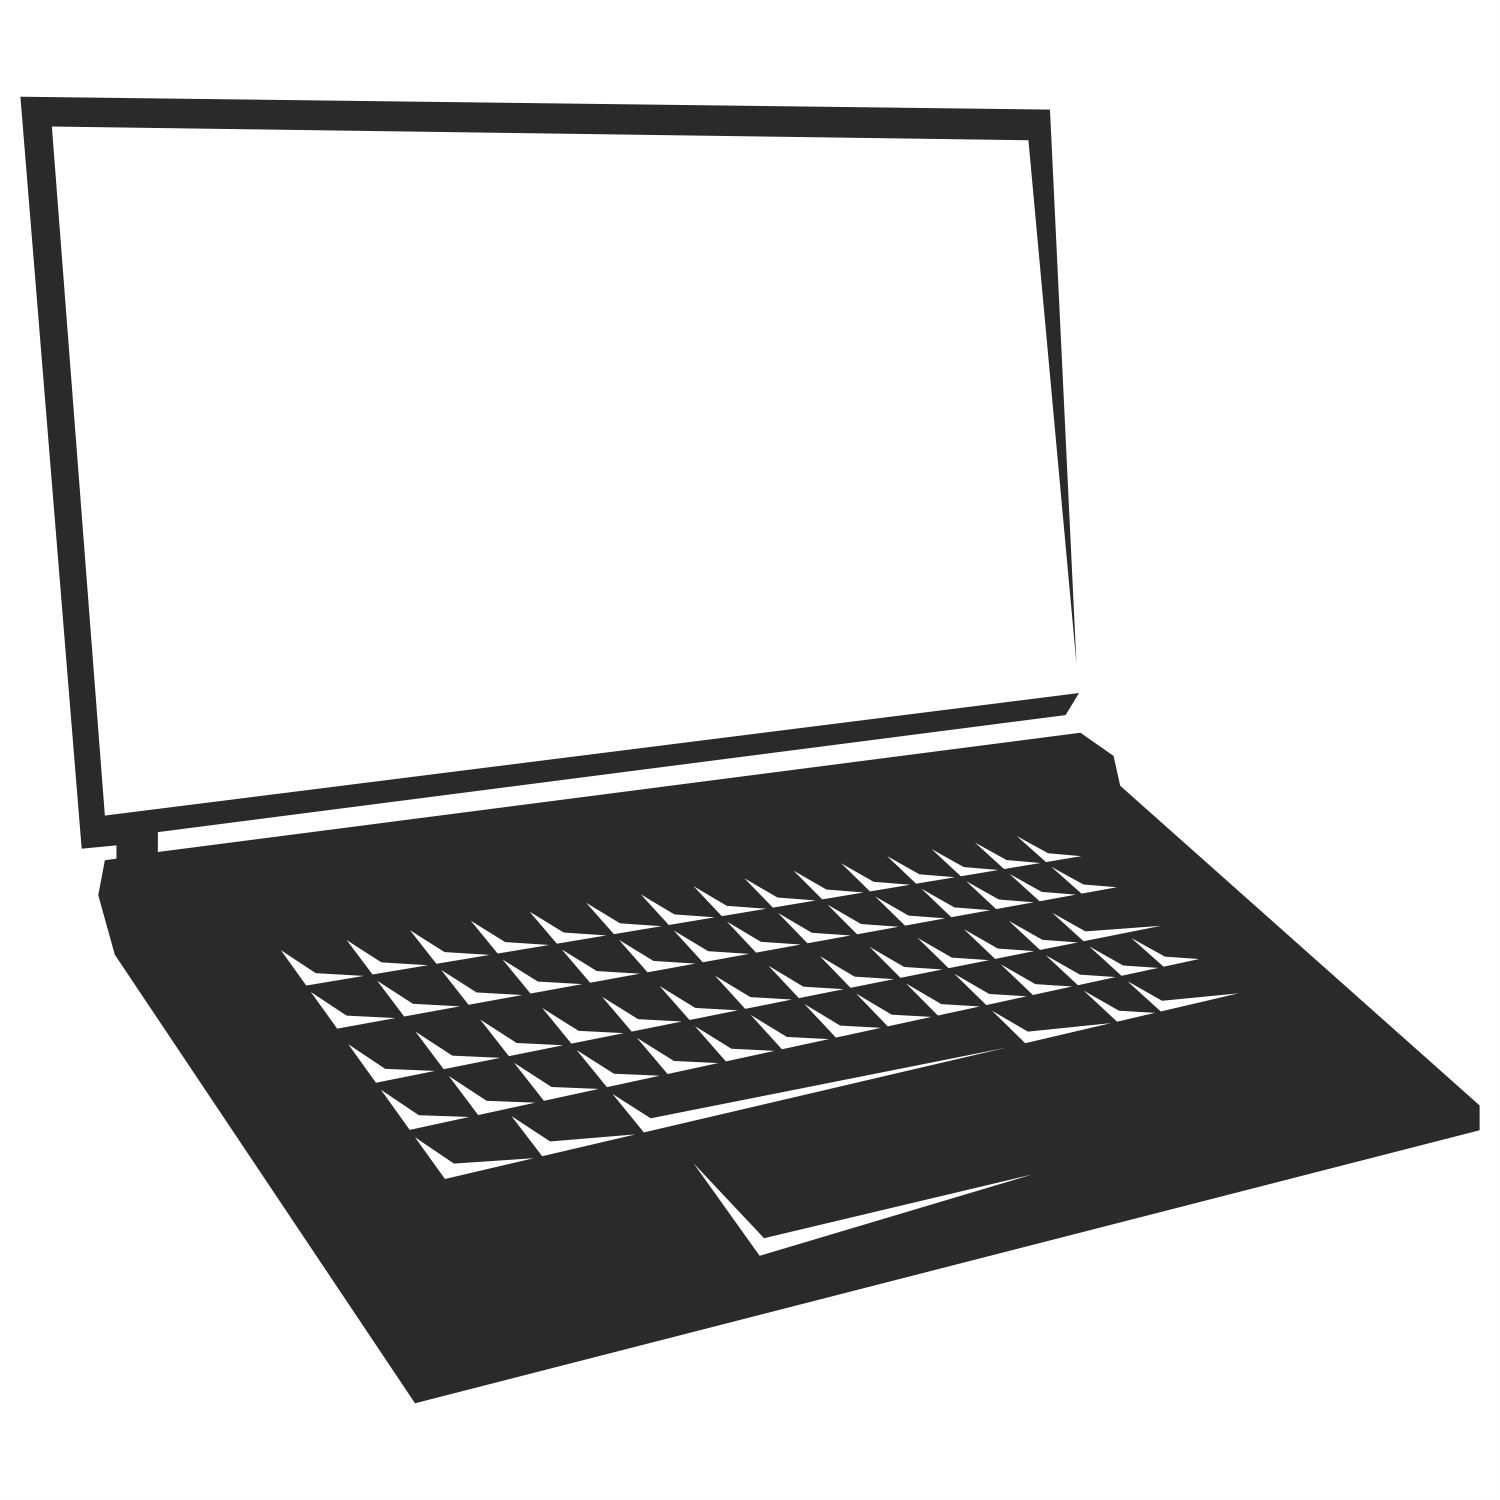 laptop vector art